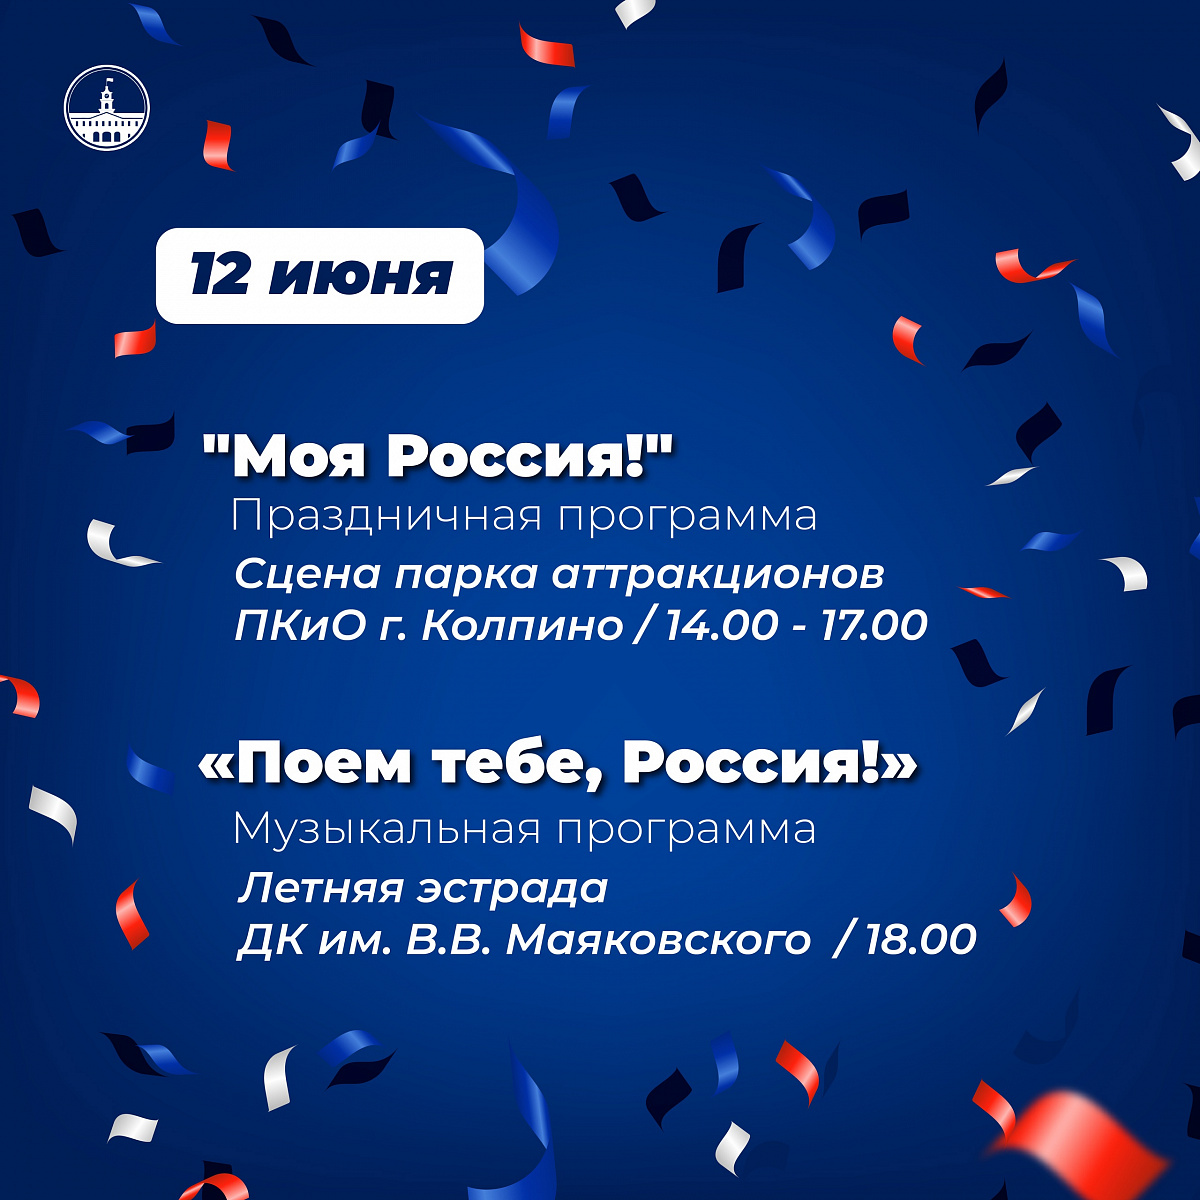 Приглашаем всех жителей и гостей Колпинского района присоединиться к празднованию Дня России